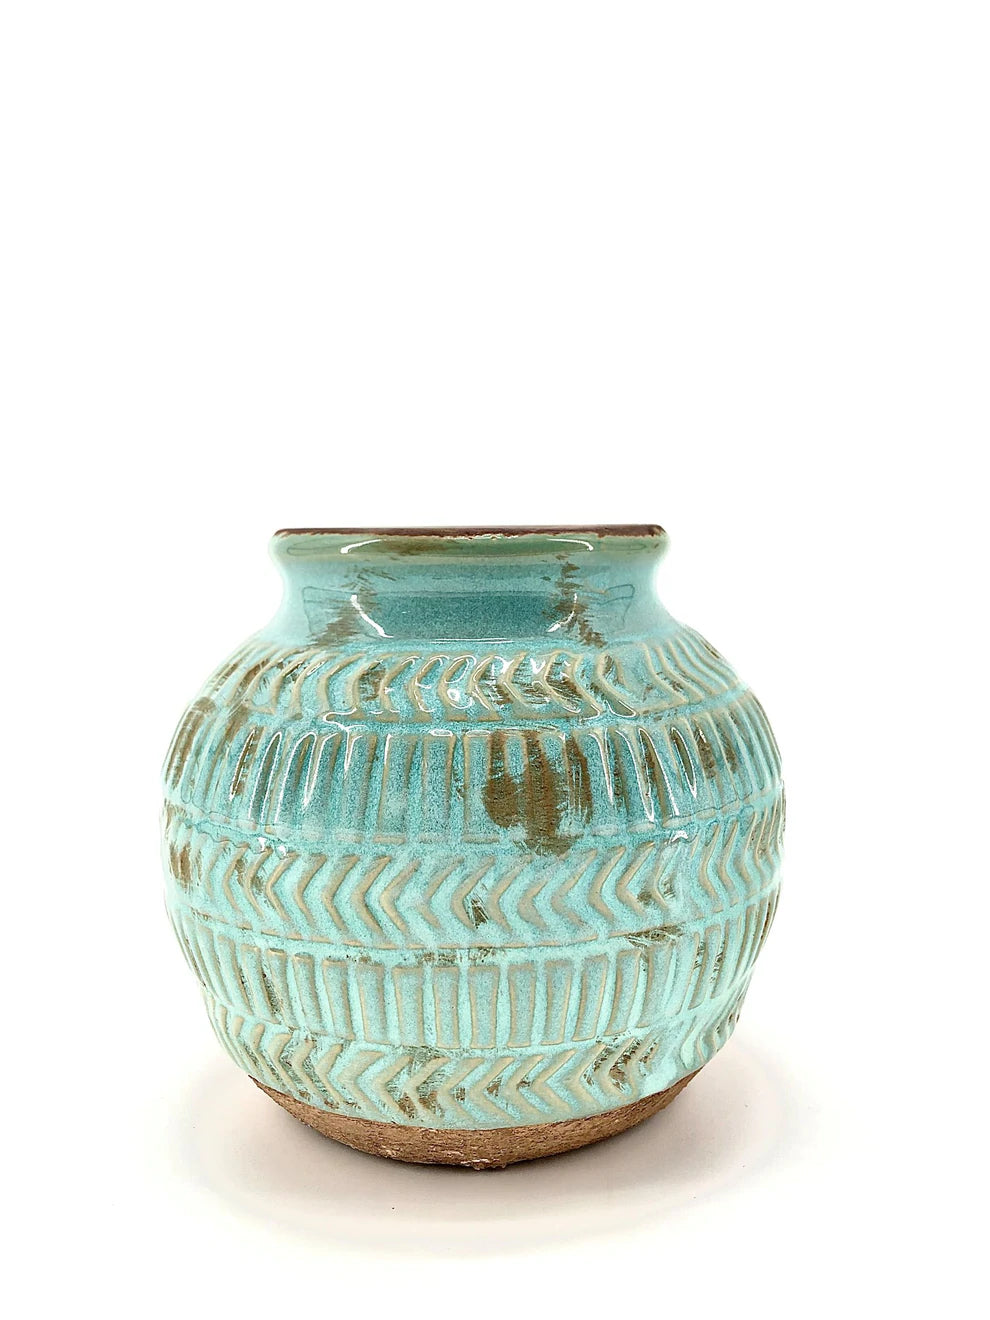 Turquoise Ceramic Vase 6"